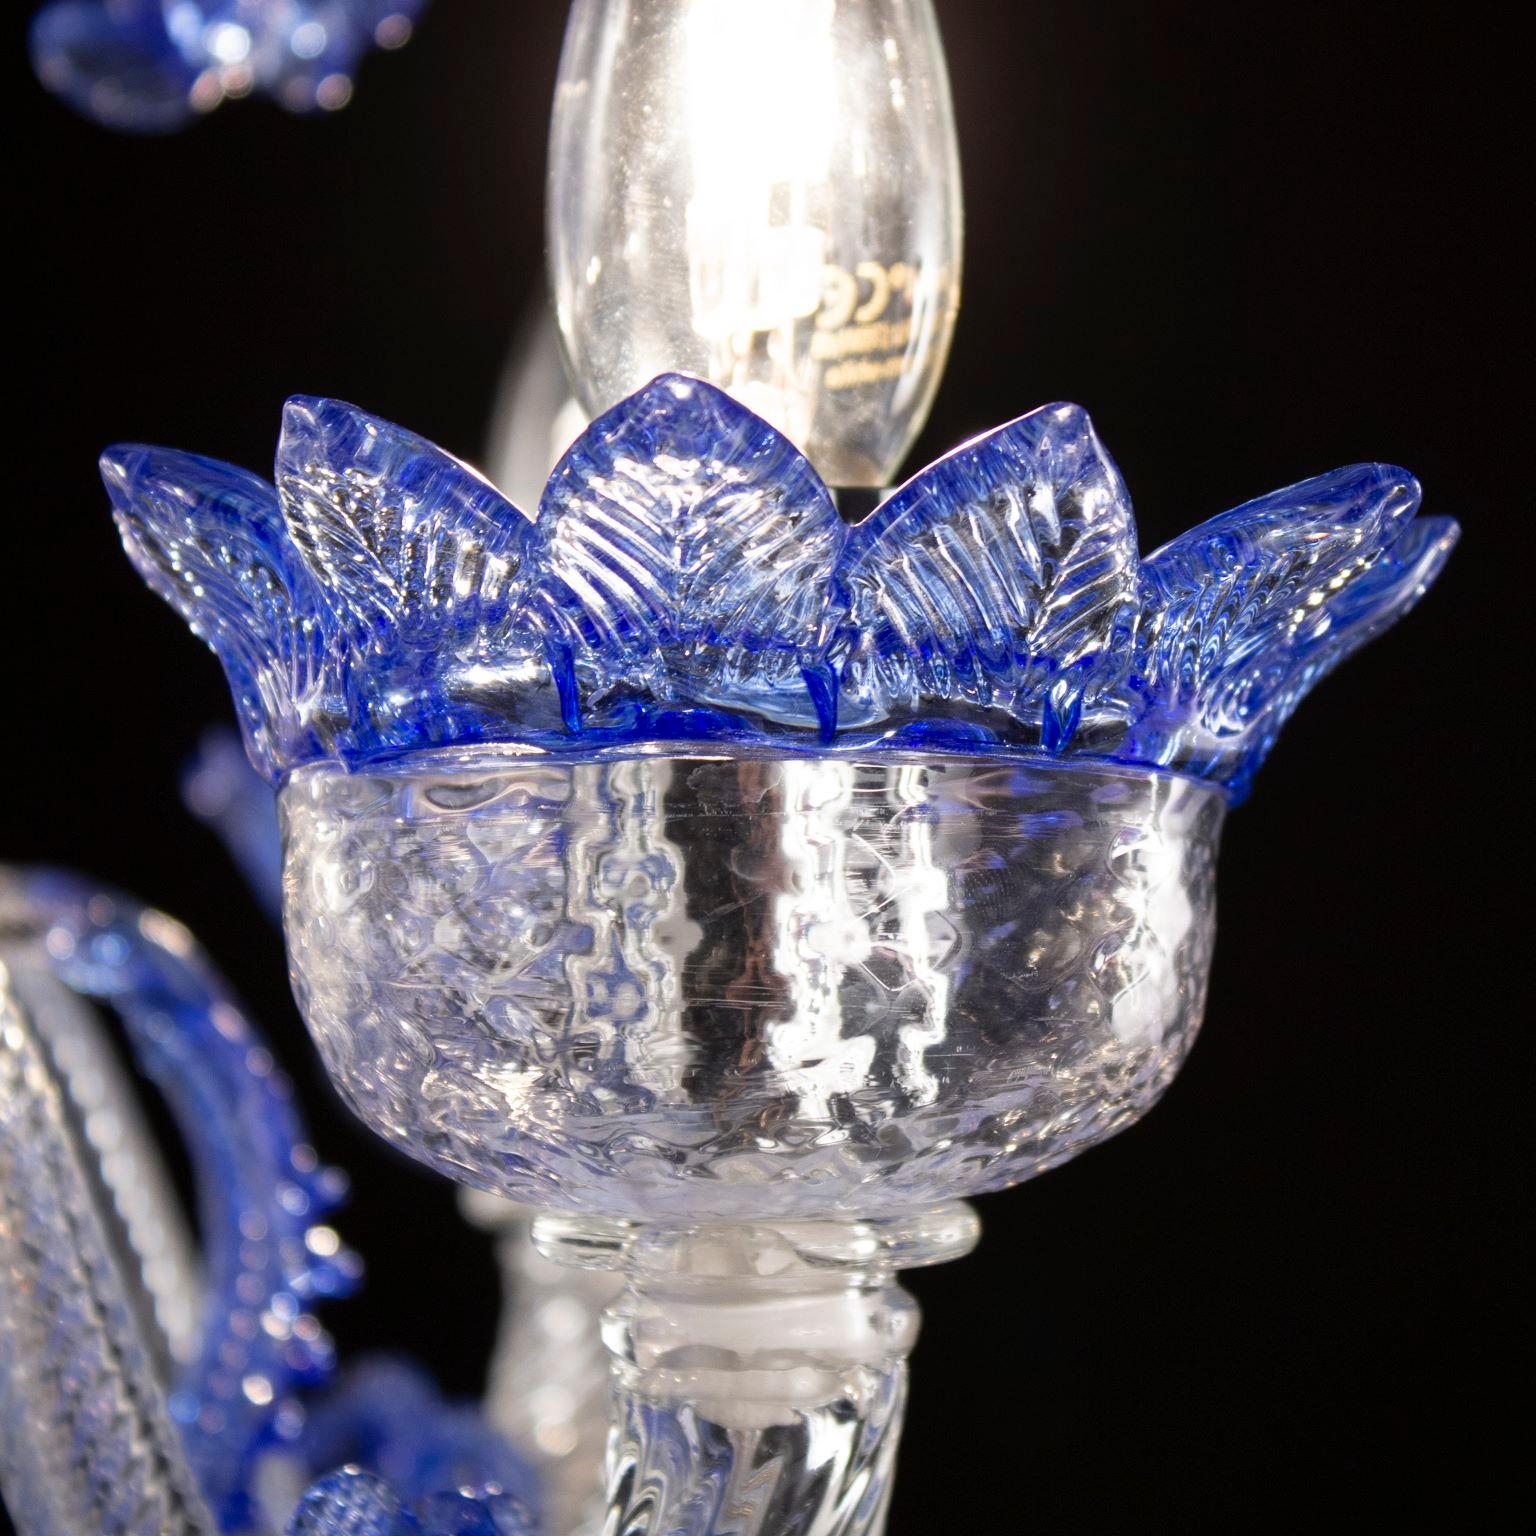 Klassischer 5-armiger Kronleuchter aus klarem und blauem Murano Glas mit Ringen von Multiforme.
Der klassische Murano-Glaslüster, wie er in der kollektiven Vorstellung ist. Wie viele andere Kronleuchter aus unseren Kollektionen wurde auch V-Classic